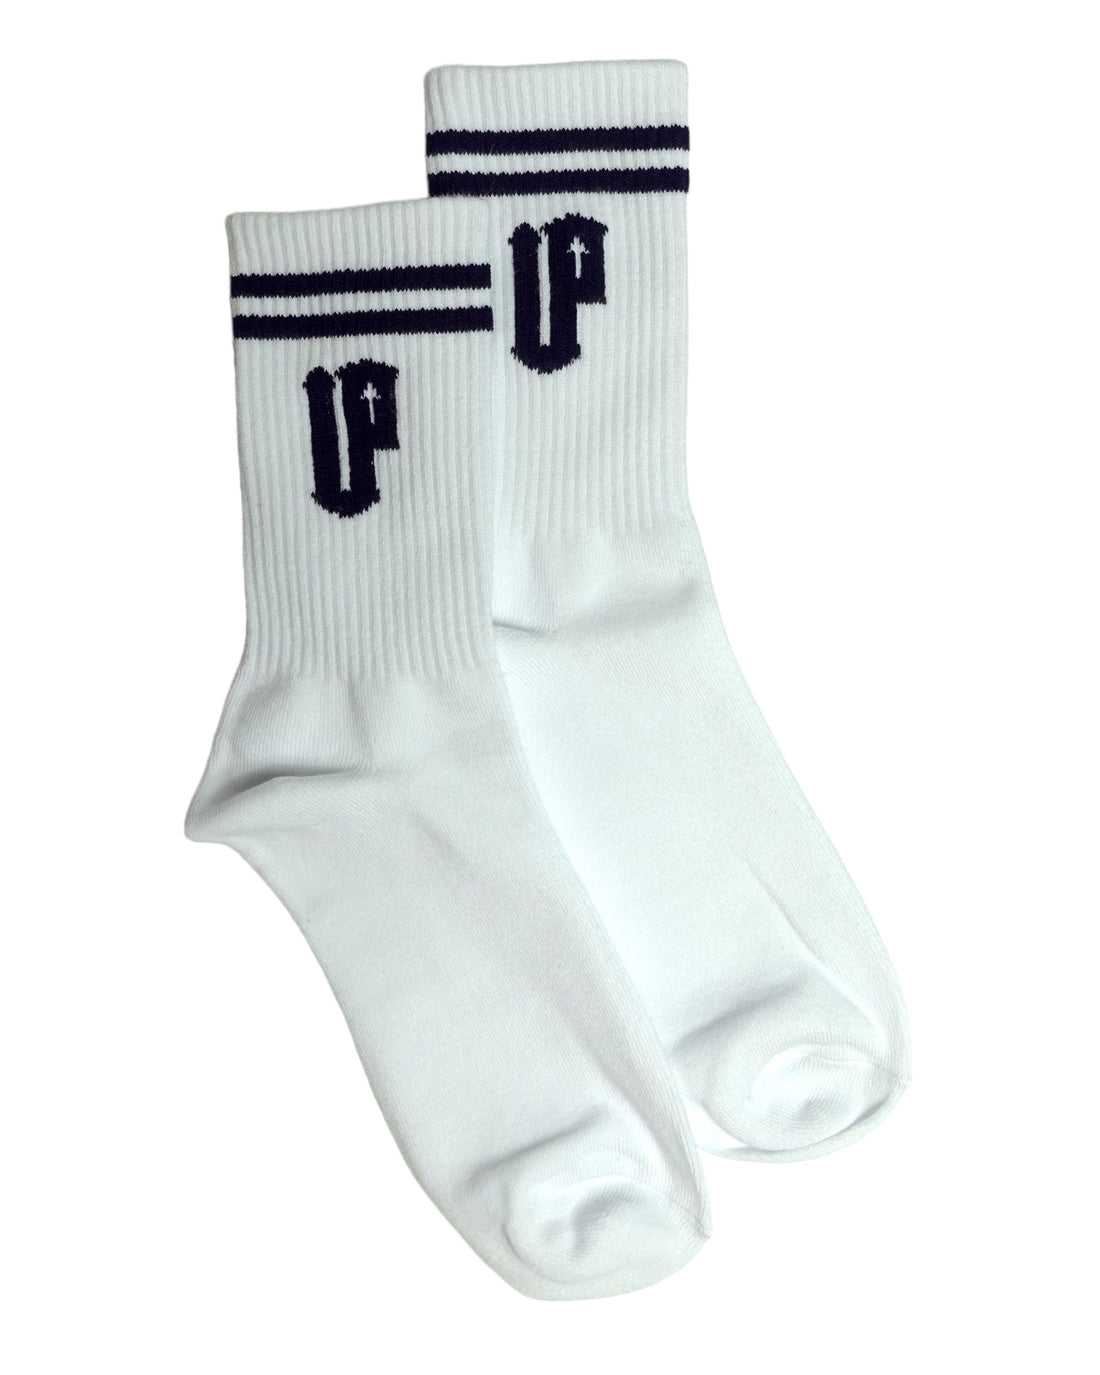 Double Up Socks - White/Black